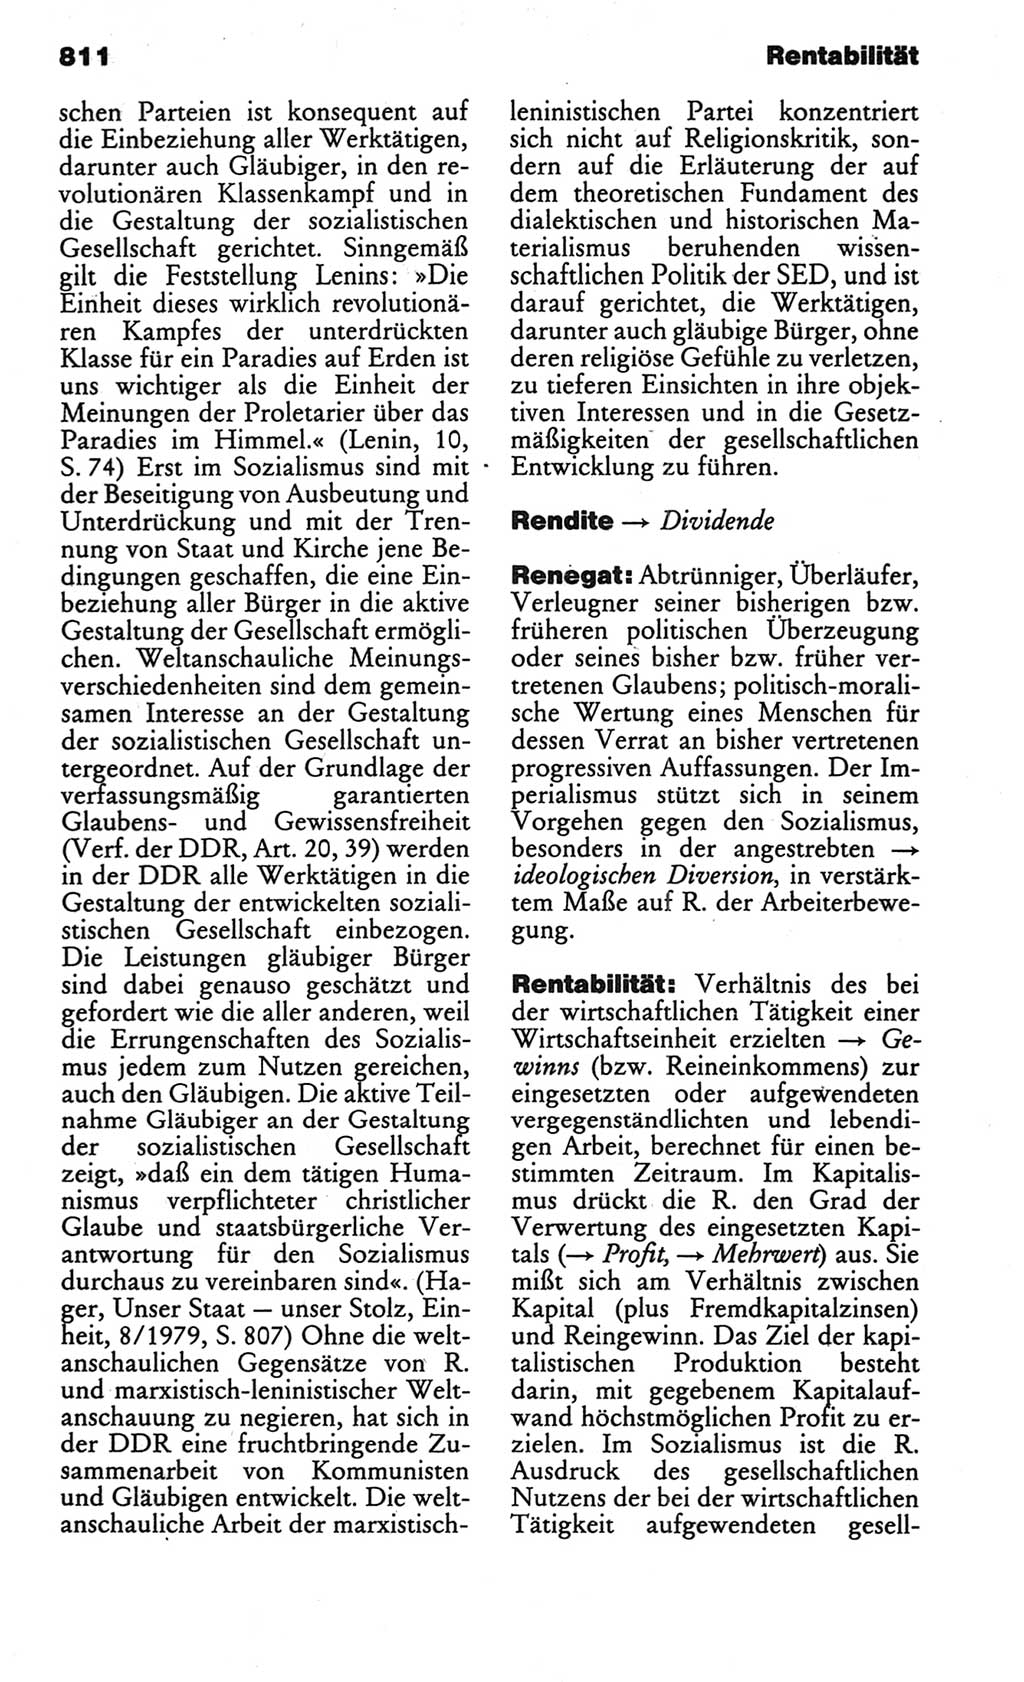 Kleines politisches Wörterbuch [Deutsche Demokratische Republik (DDR)] 1986, Seite 811 (Kl. pol. Wb. DDR 1986, S. 811)